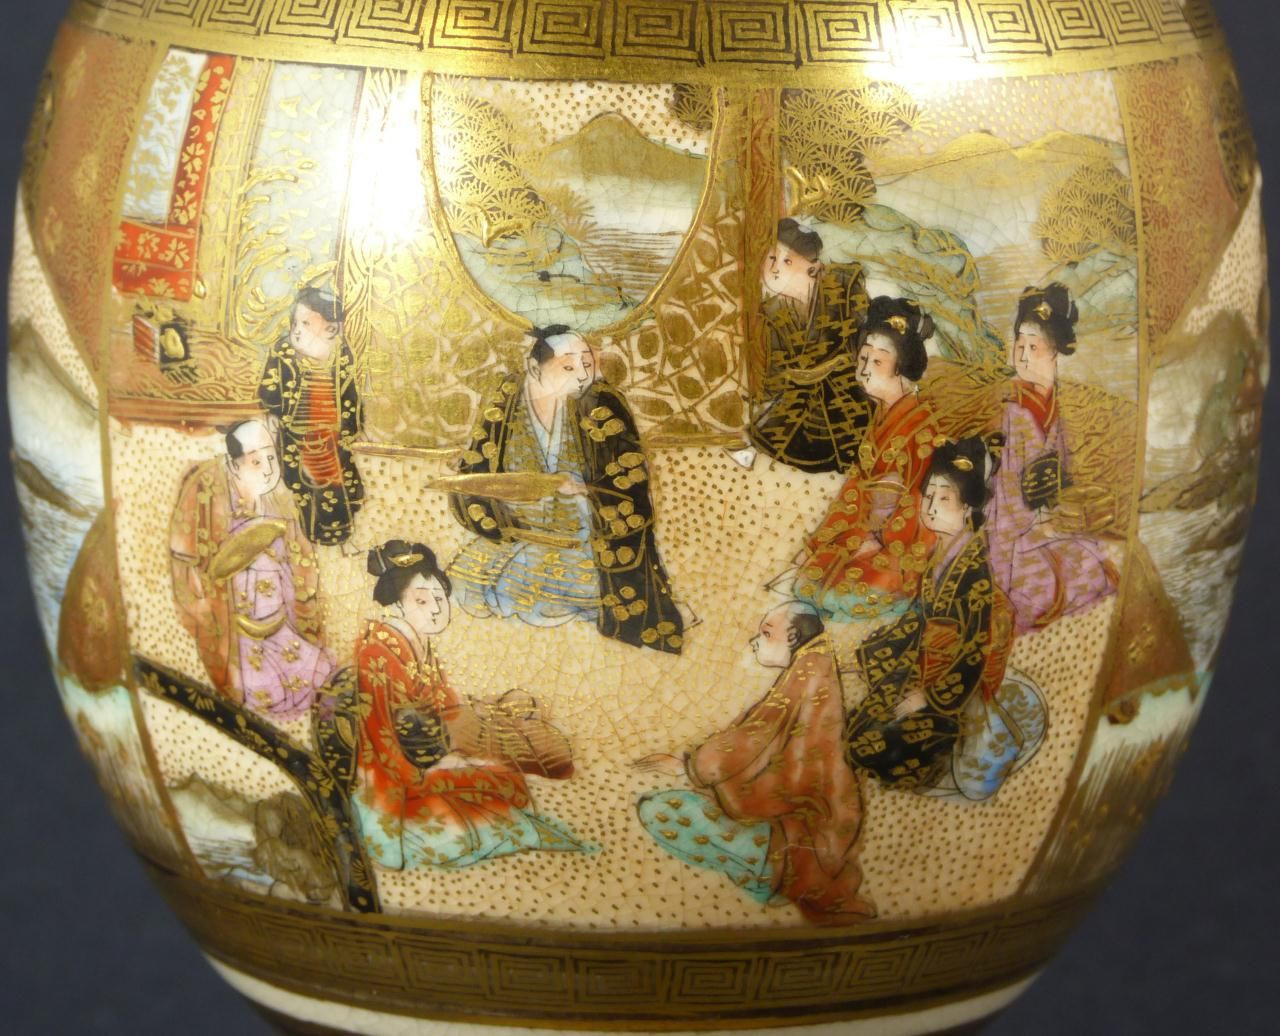 15 Wonderful Royal Satsuma Vase 2024 free download royal satsuma vase of detail from hand painted satsuma porcelain vase beautiful satsuma within detail from hand painted satsuma porcelain vase